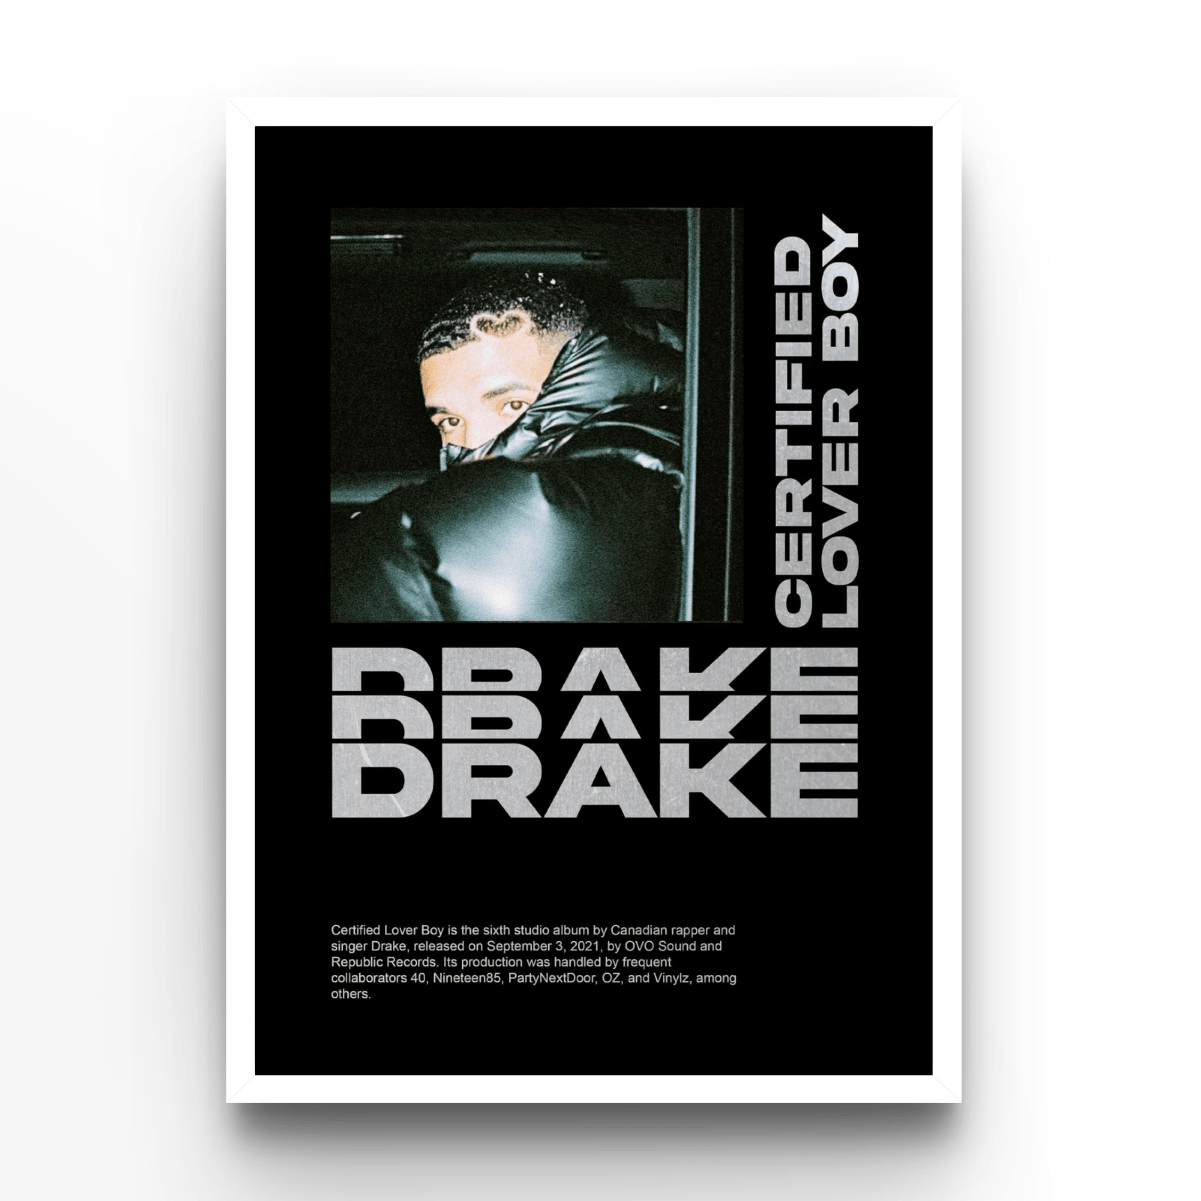 Drake - A4, A3, A2 Posters Base - Poster Print Shop / Art Prints / PostersBase